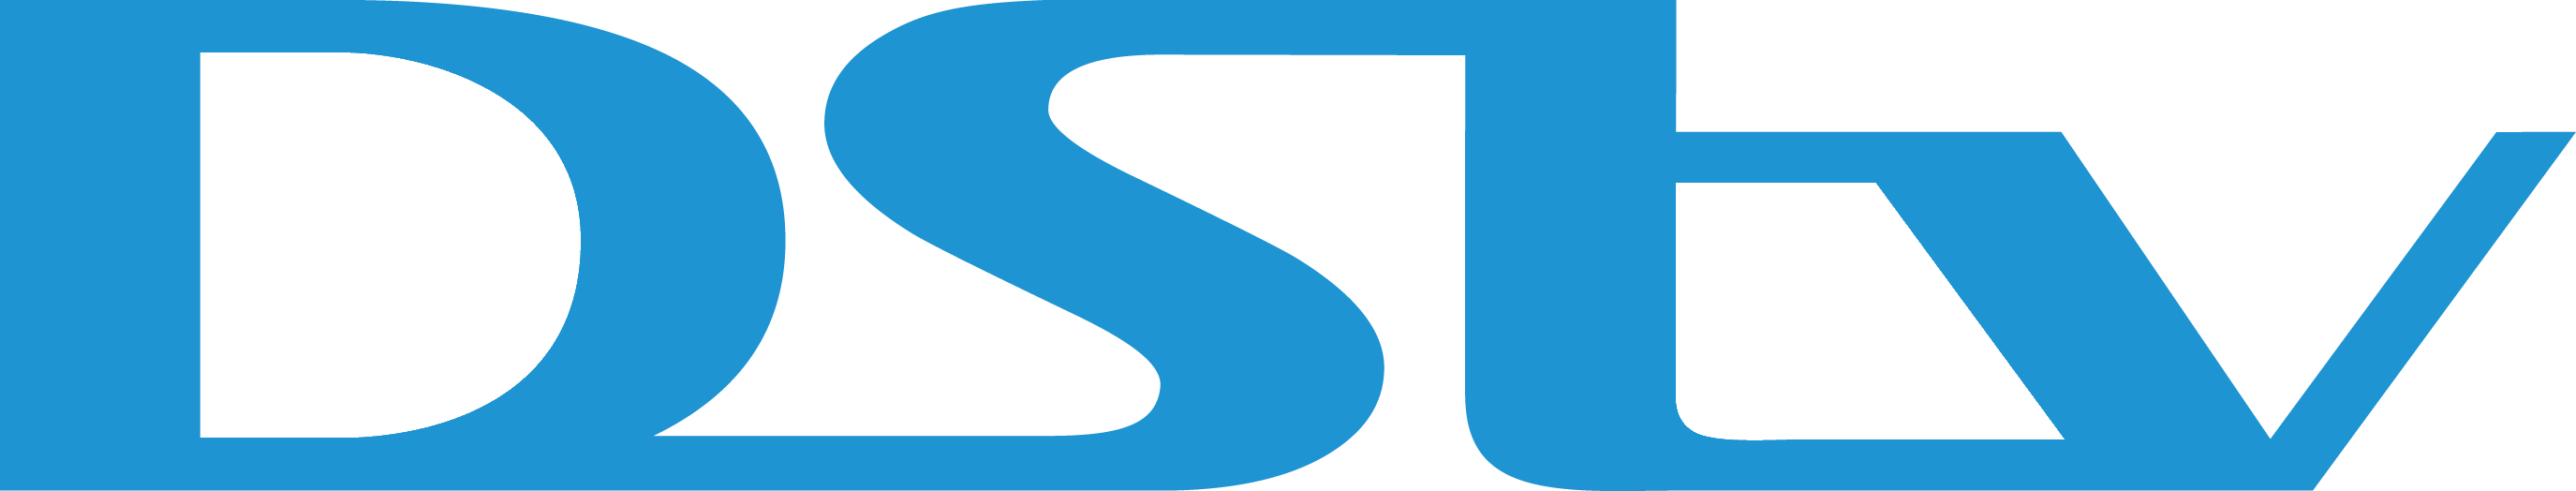 dstv-logo